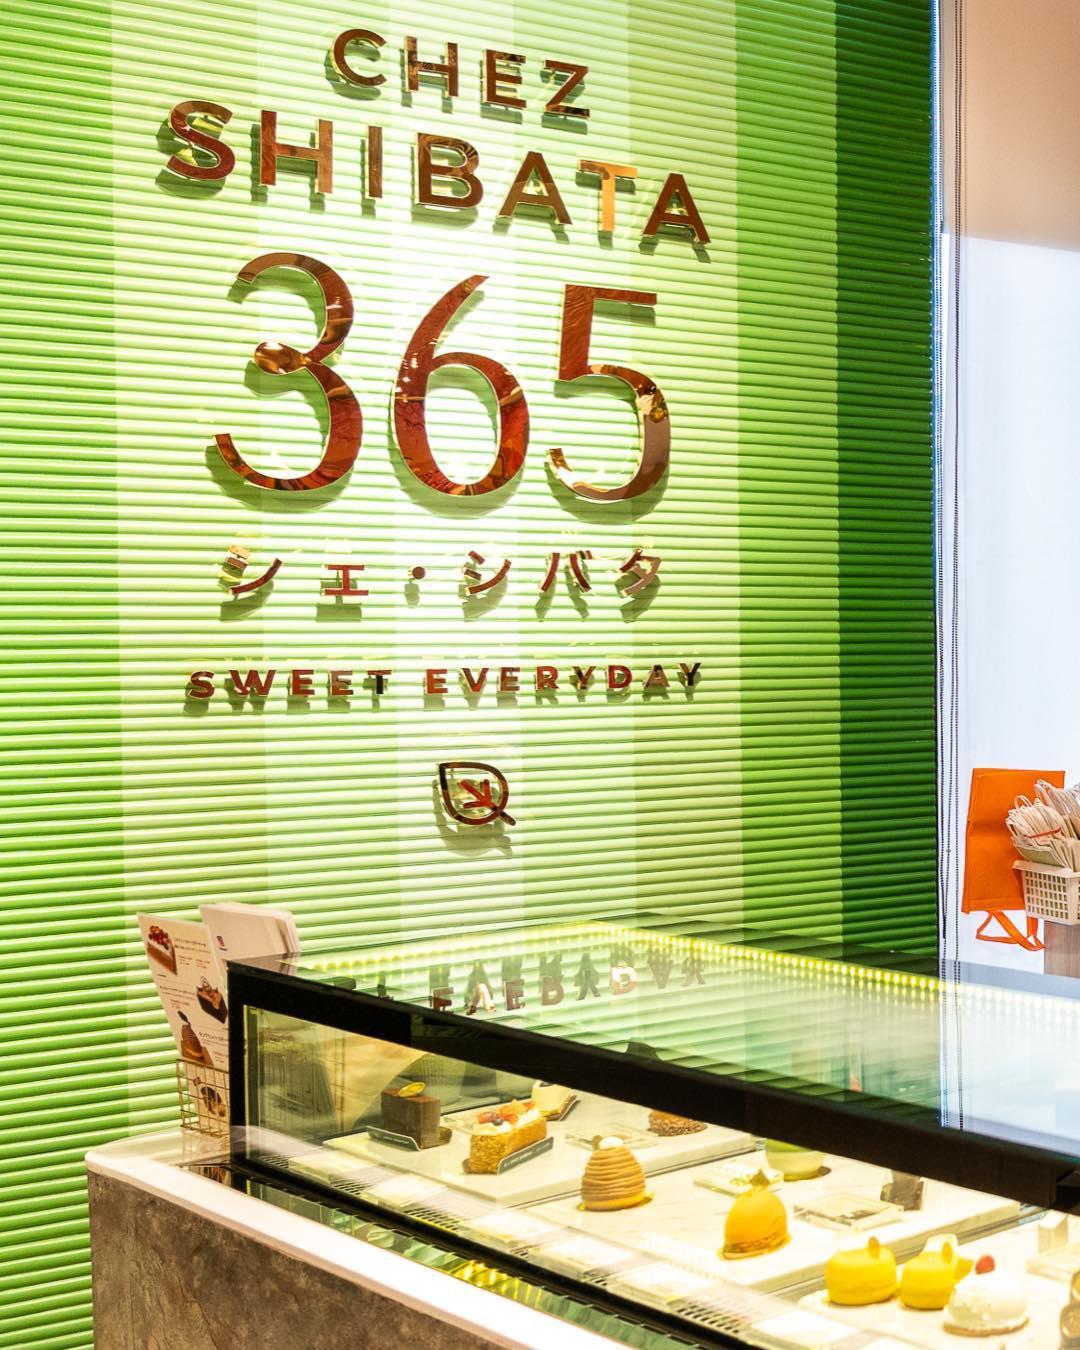 4. chez shibata 365